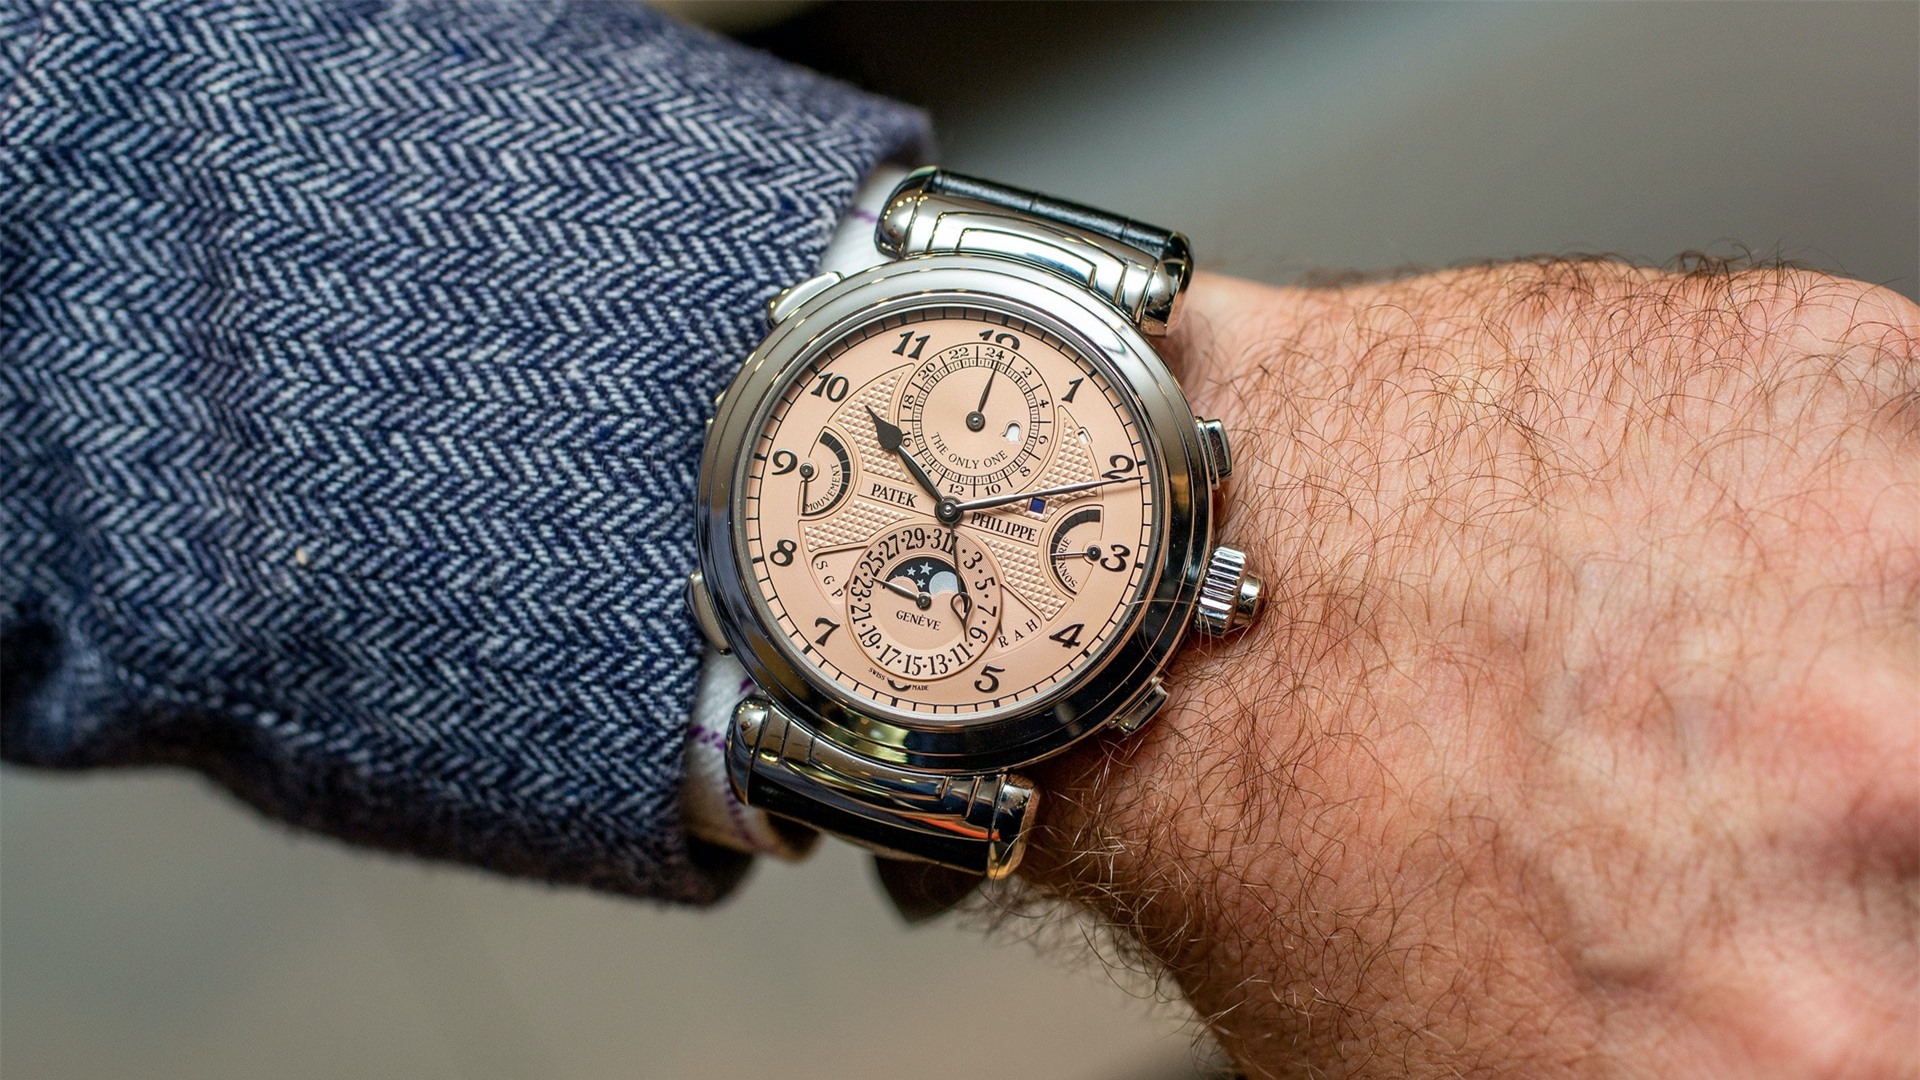 Những điều ít biết về các mẫu đồng hồ chỉ dành cho giới siêu giàu - Ảnh 2.